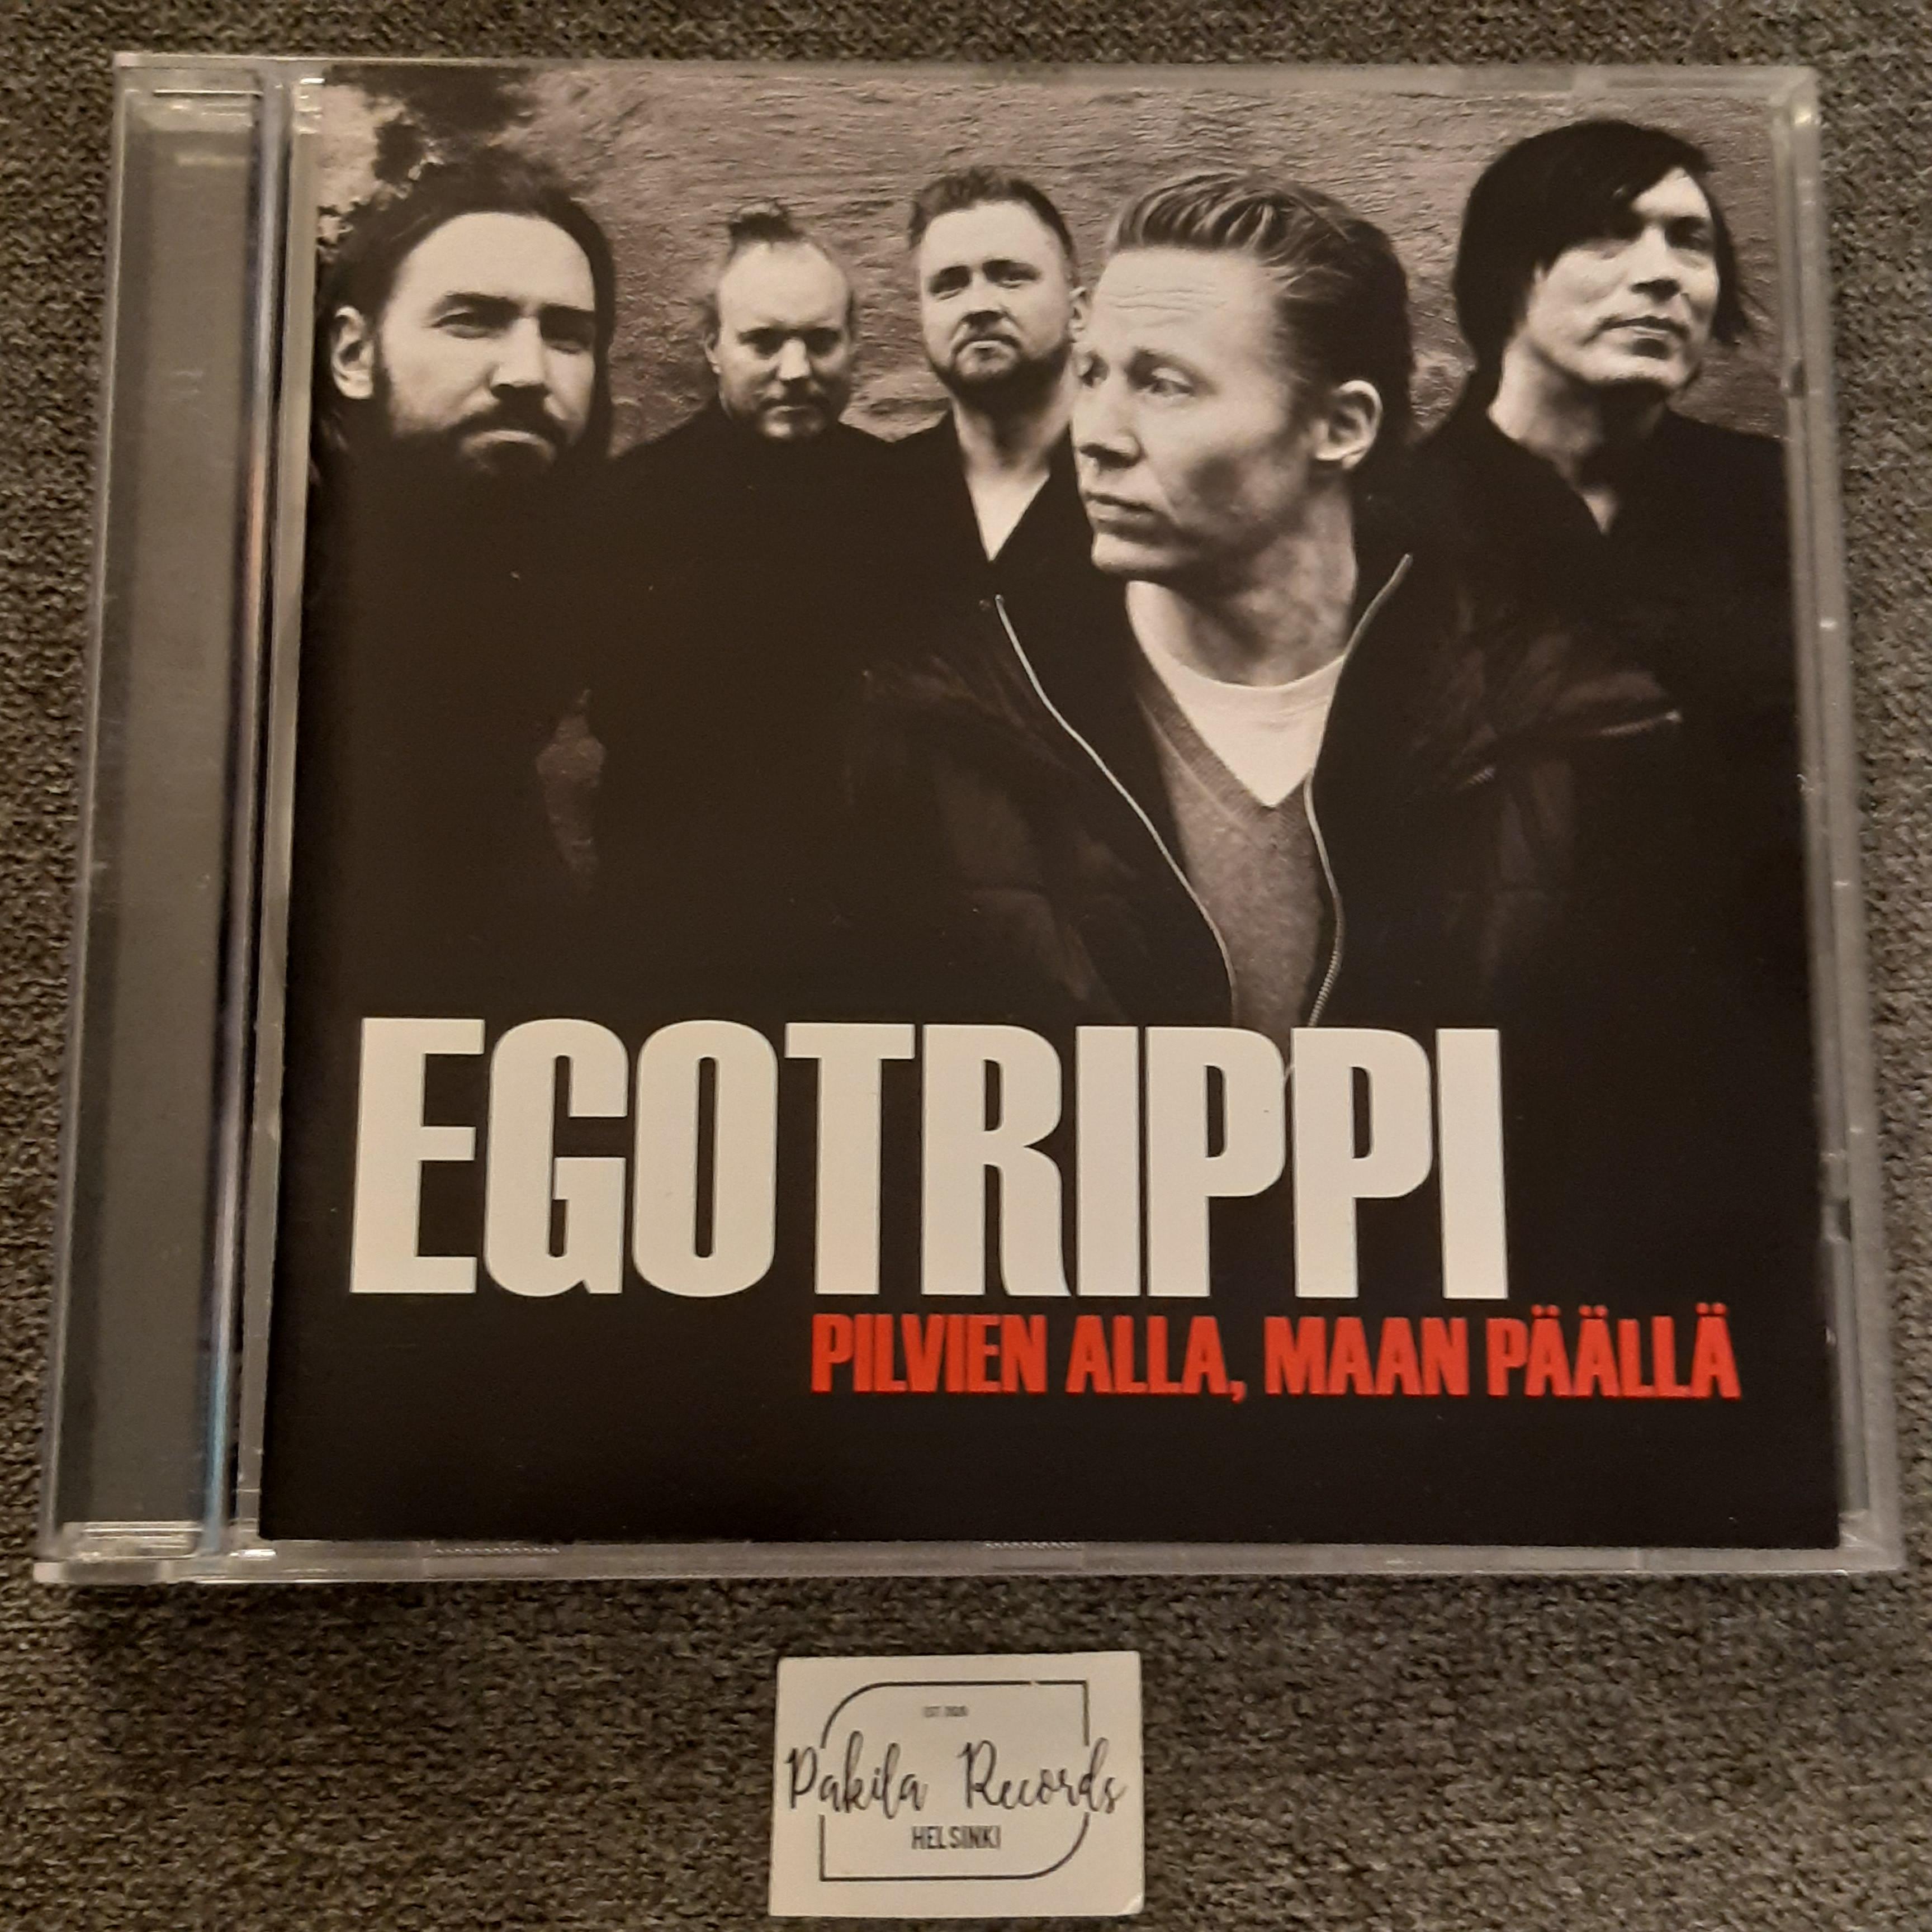 Egotrippi - Pilvien alla, maan päällä - CD (käytetty)